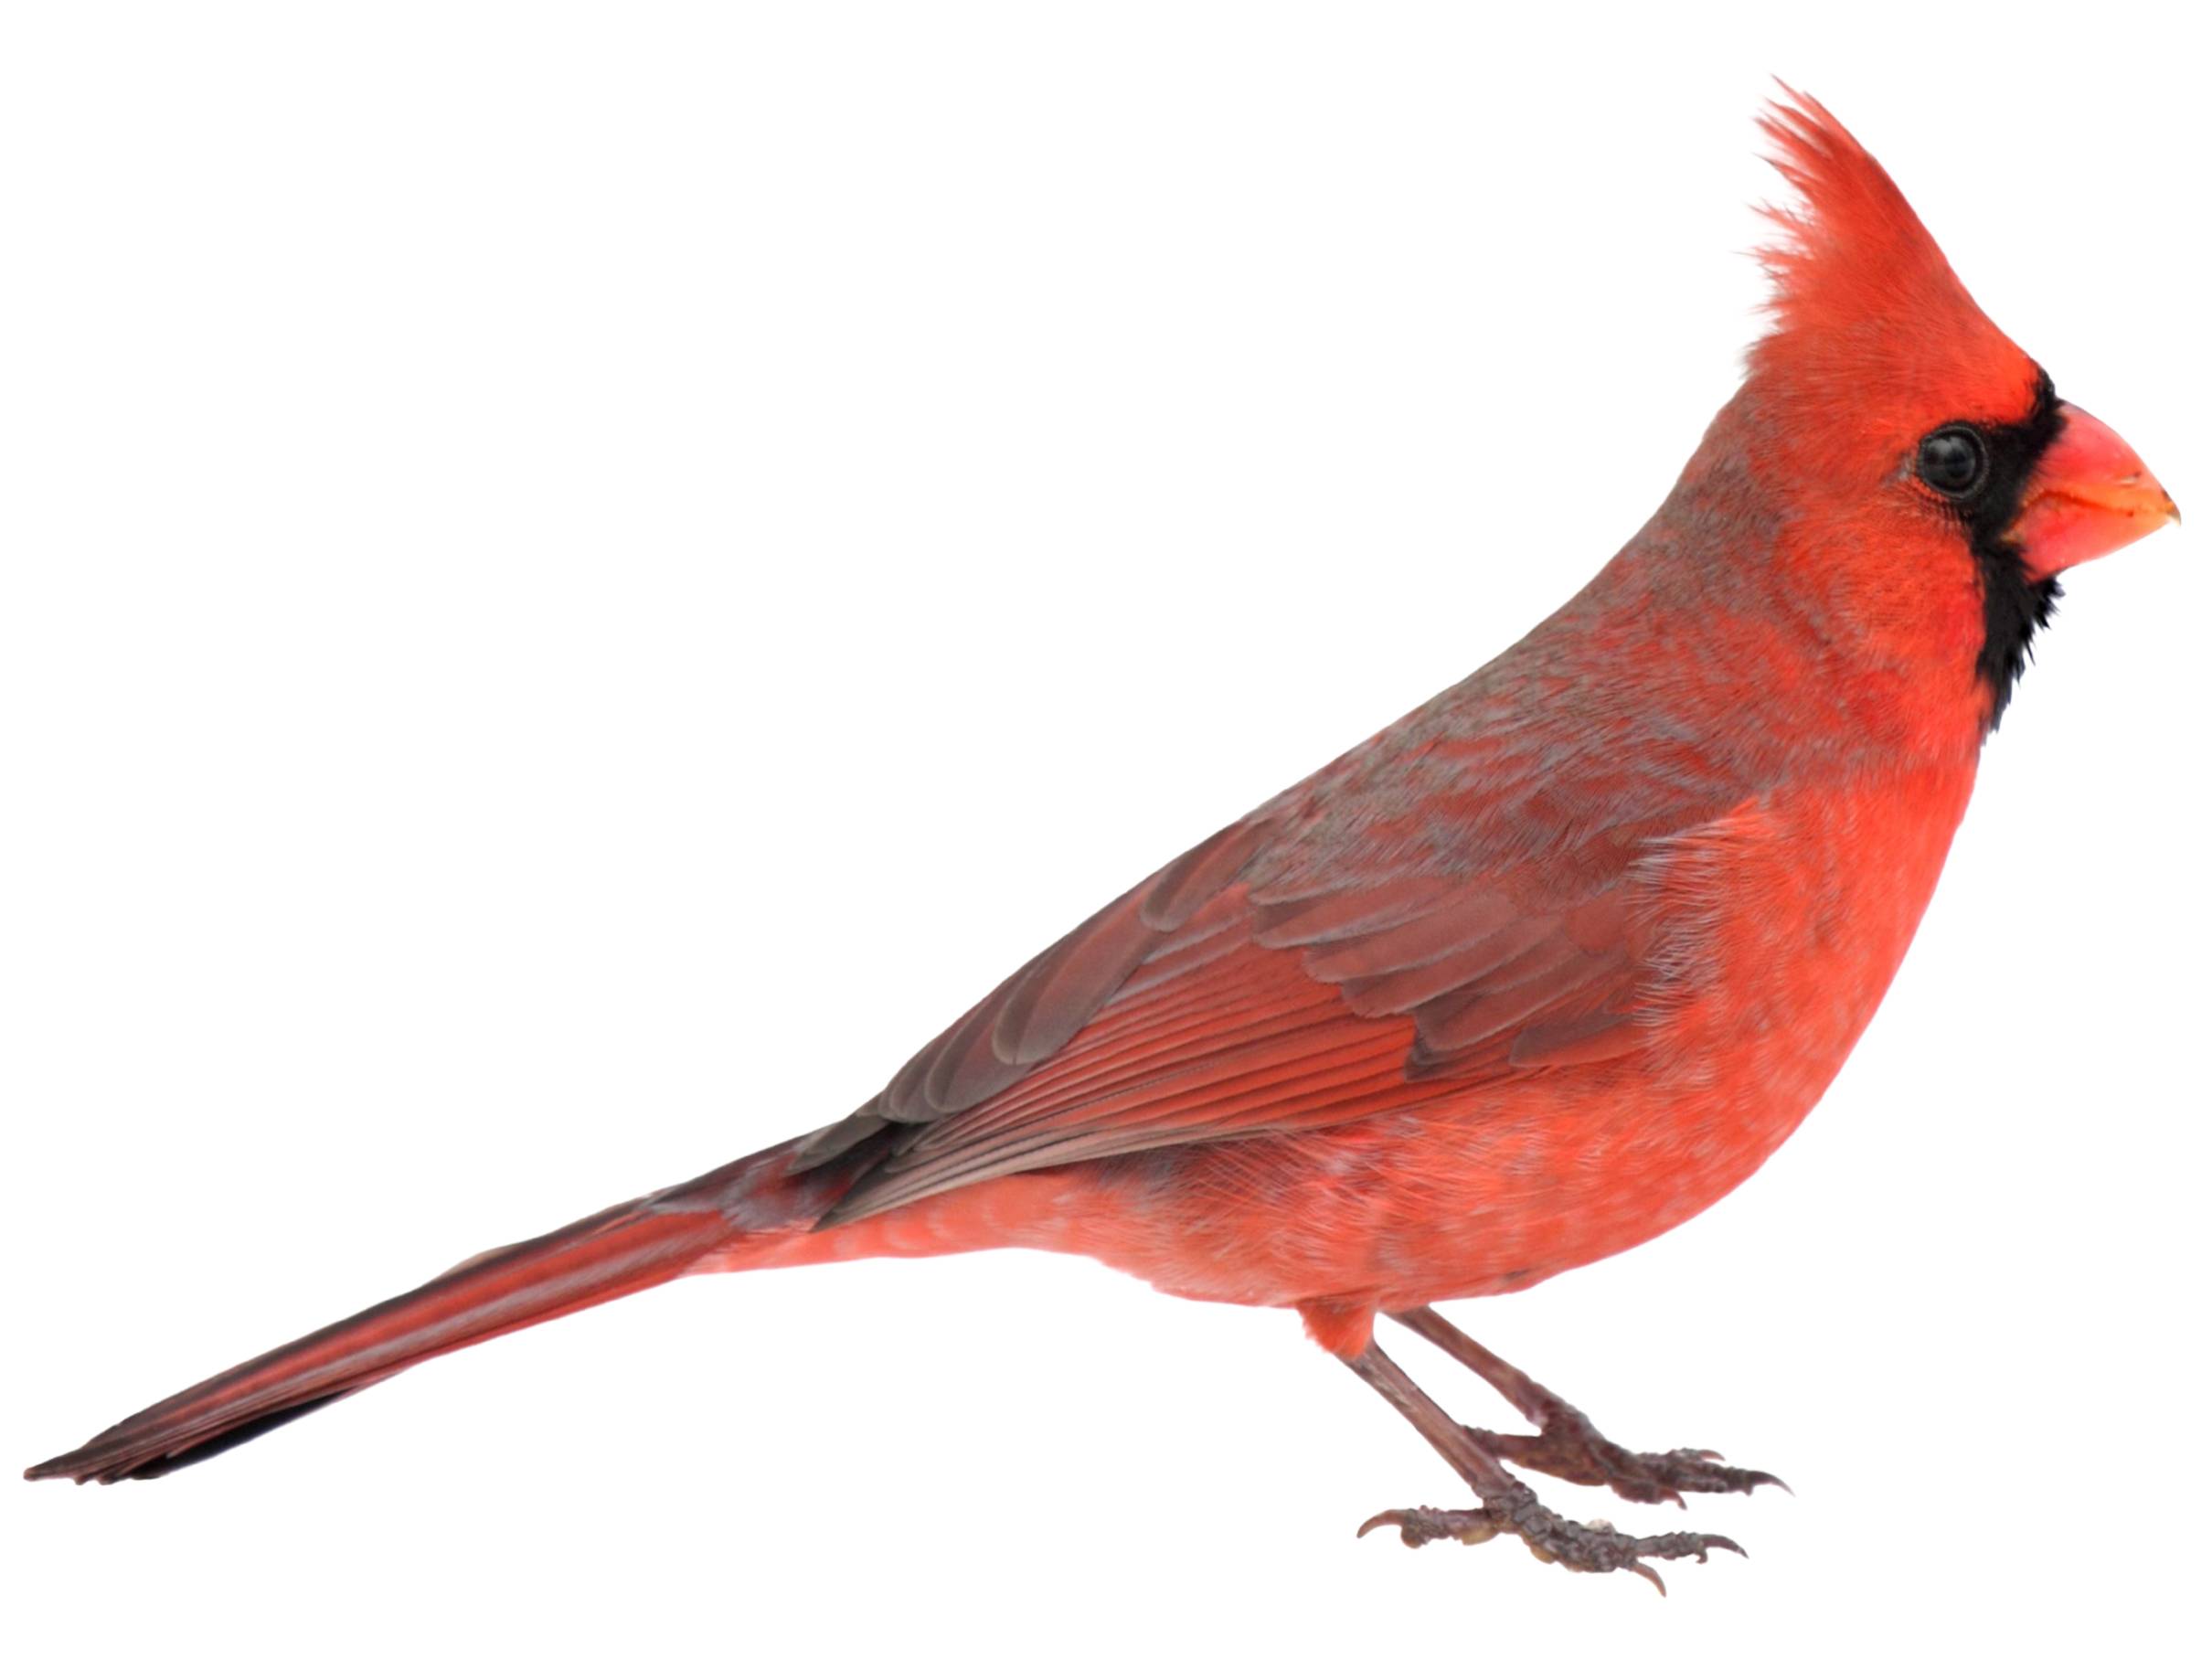 A photo of a Northern Cardinal (Cardinalis cardinalis), male